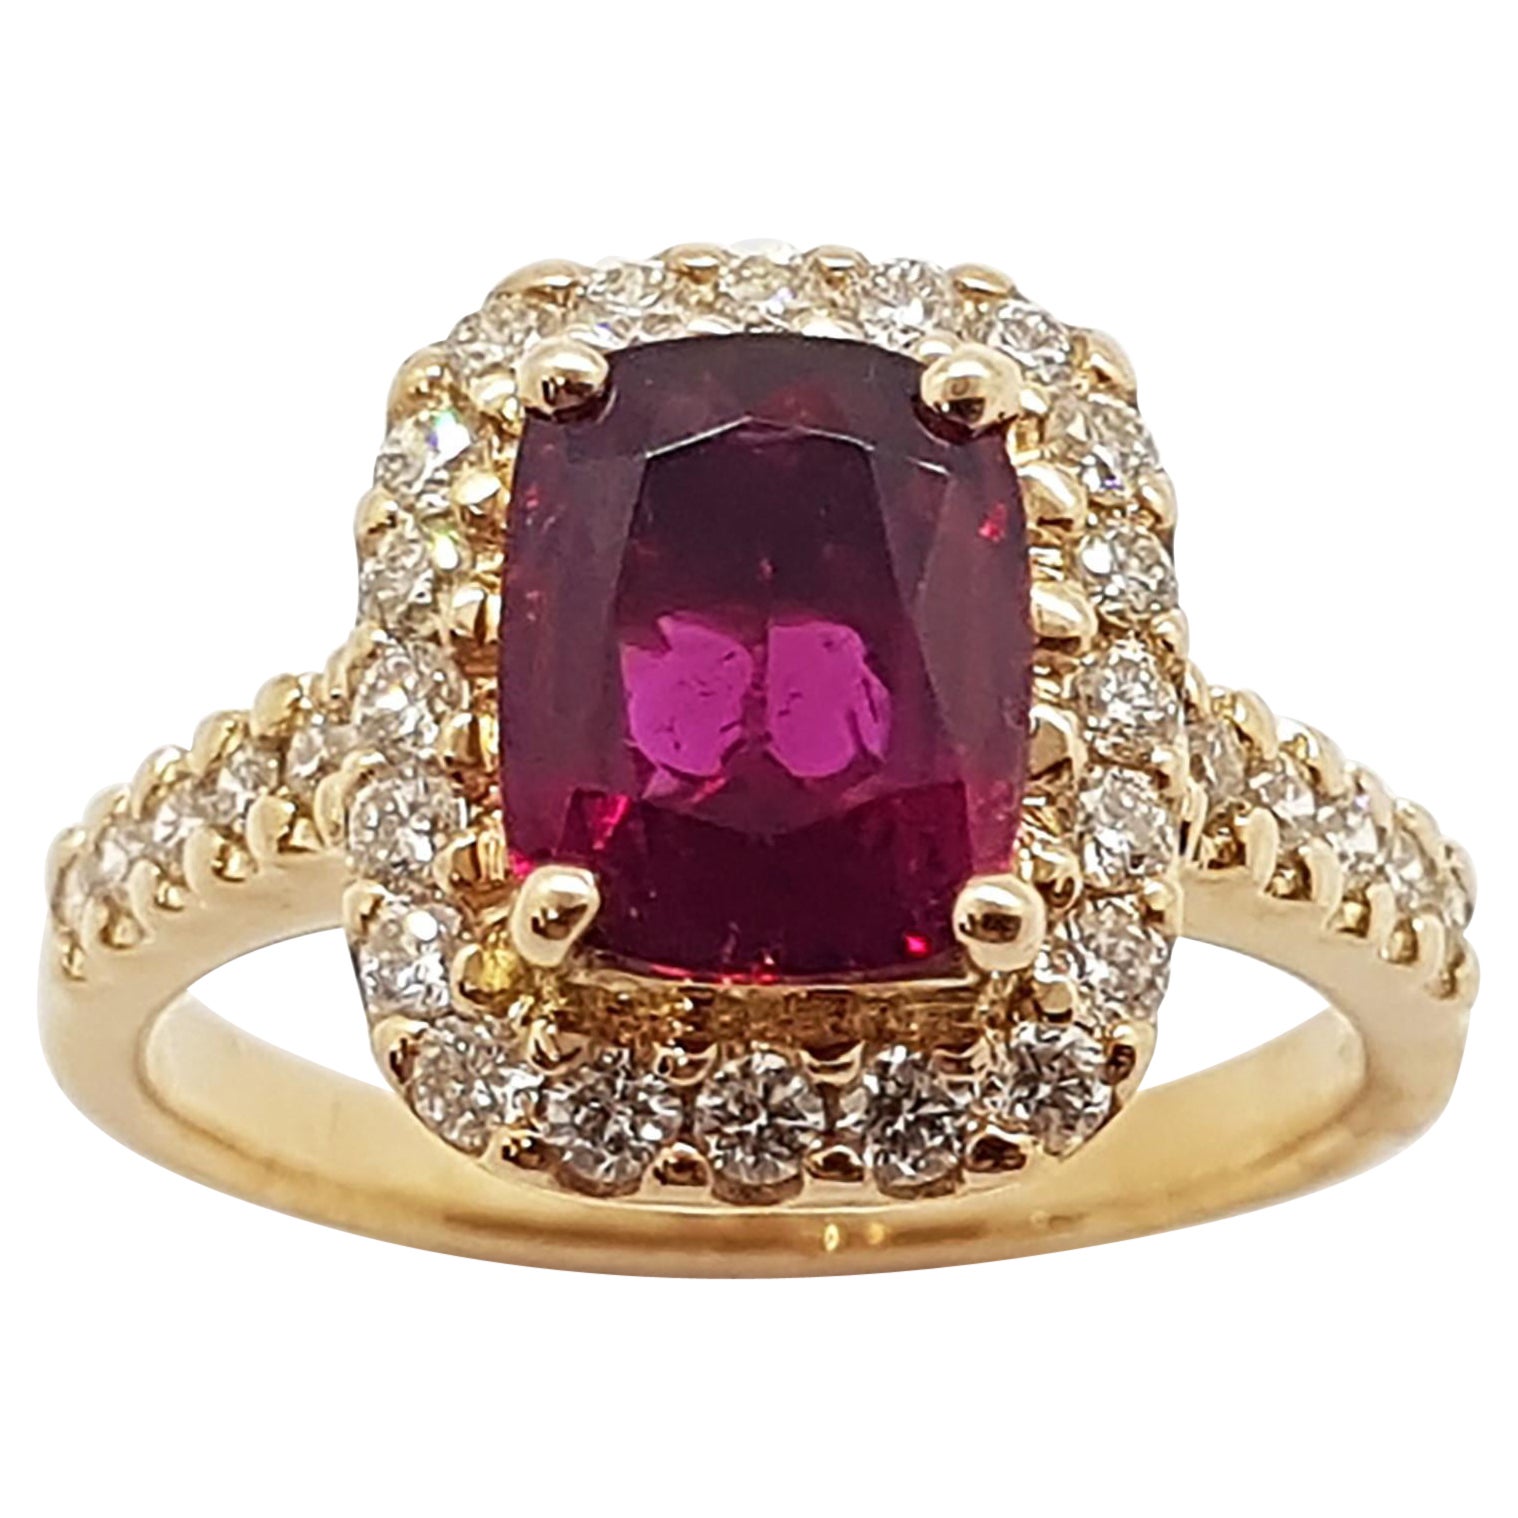 Rubellite with Diamond Ring Set in 18 Karat Rose Gold Settings